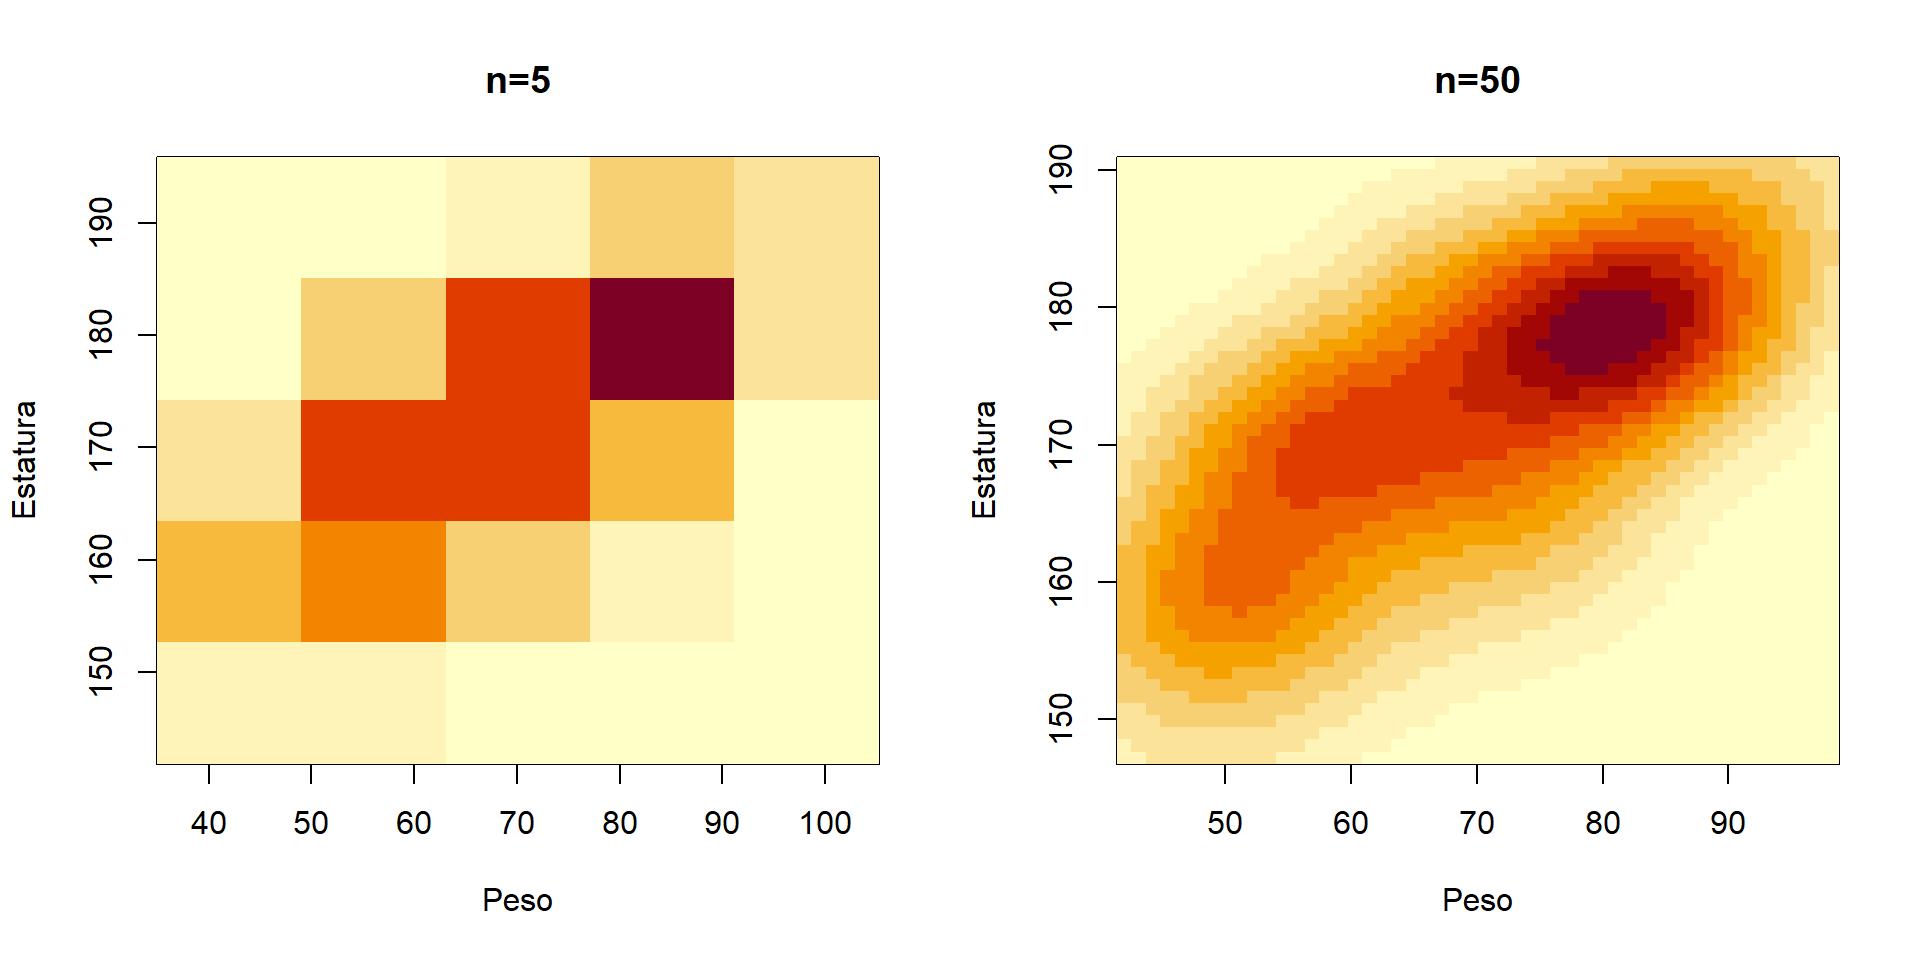 Gráfico de densidad bivariada para el peso corporal y la estatura de un grupo de estudiantes. A la izquierda la densidad con `n=5` y a la derecha con `n=50`.